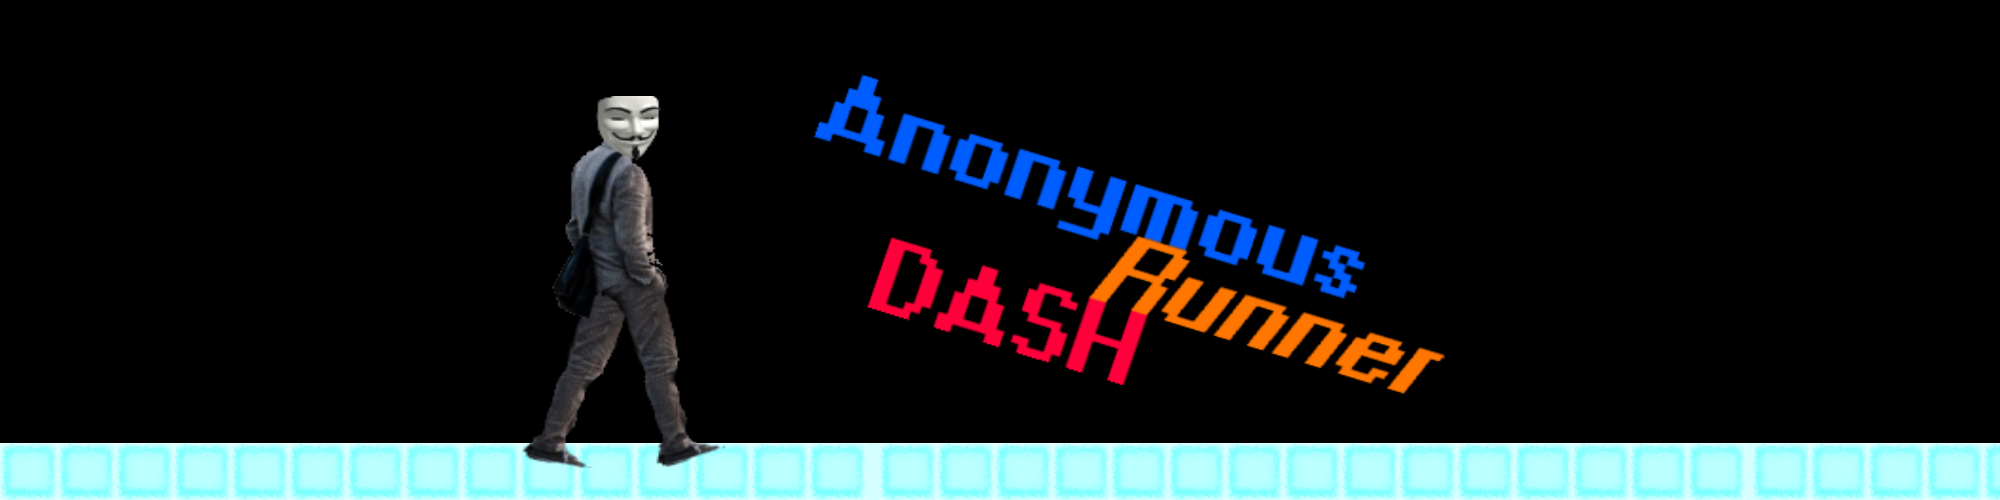 AnonymoUs: Runner Dash